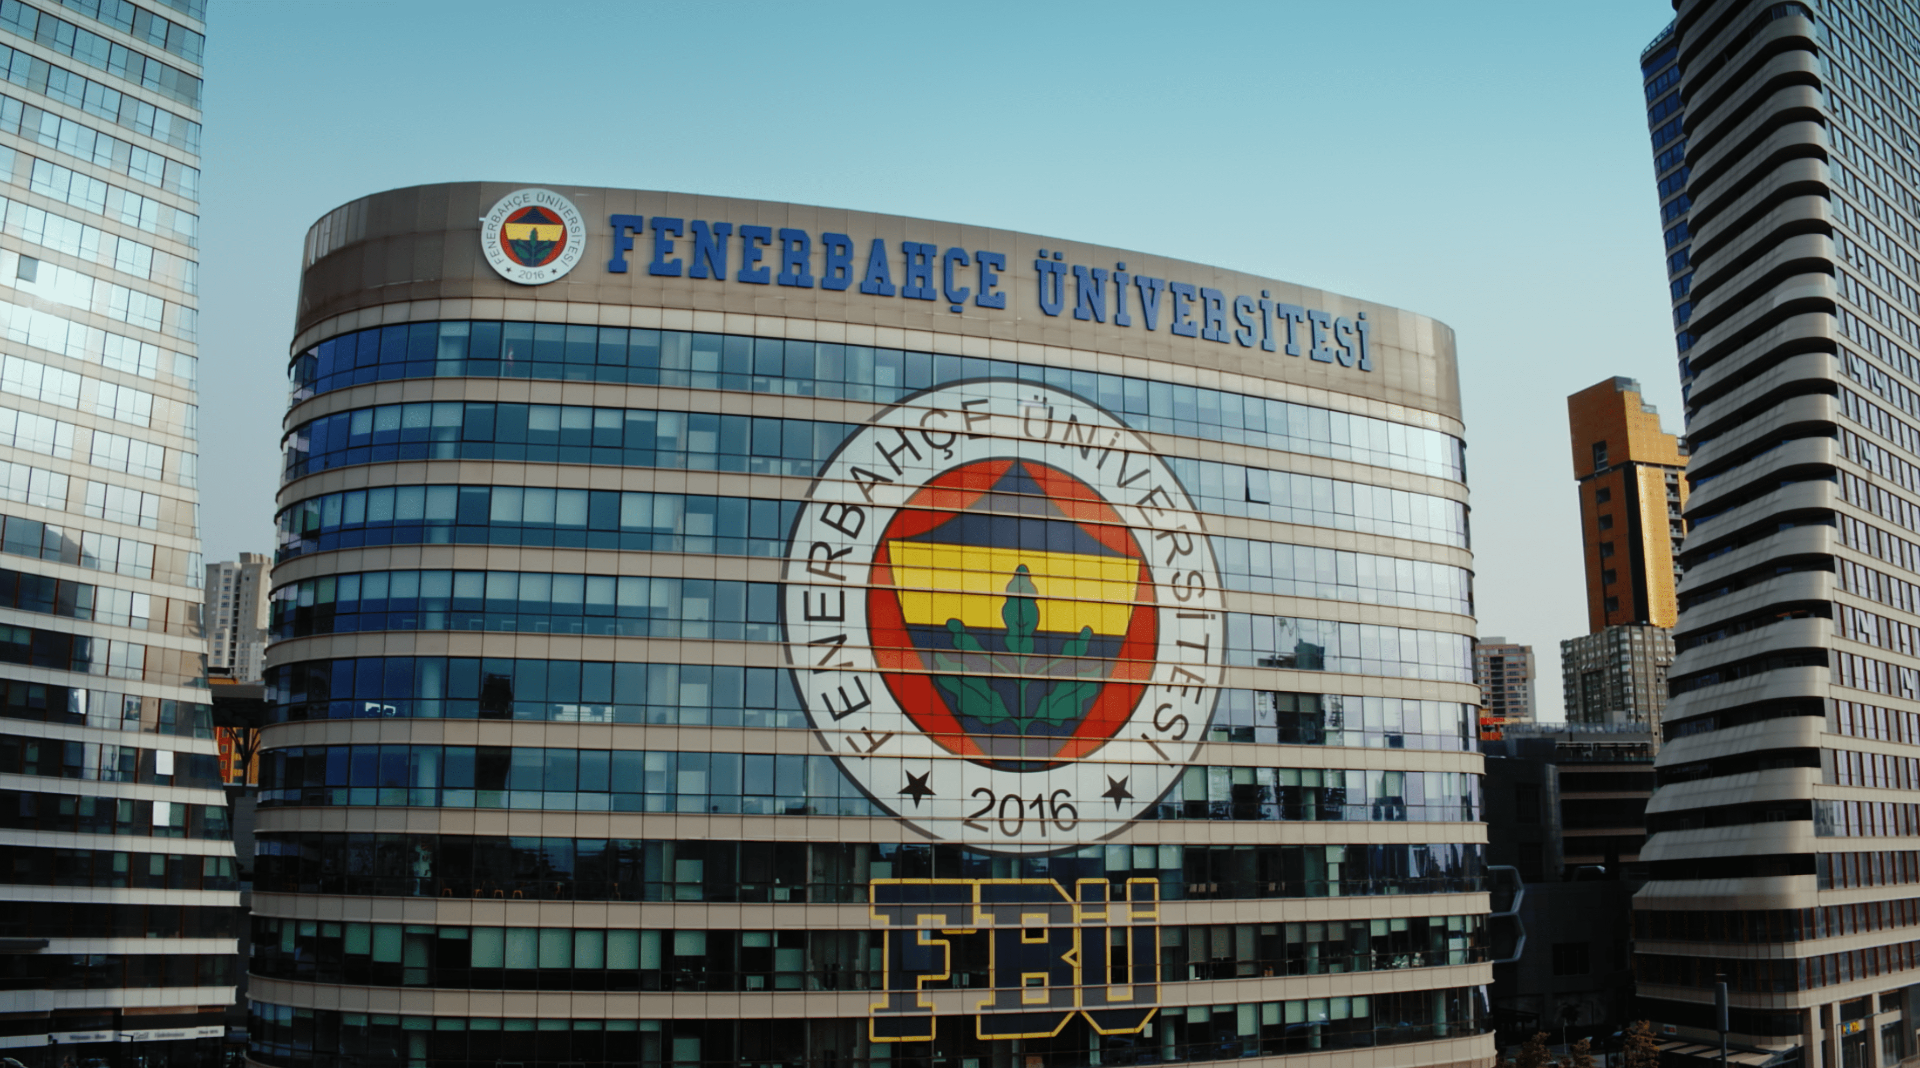 Fenerbahçe Üniversitesi Öğretim Üyesi ilanı vereceğini duyurdu